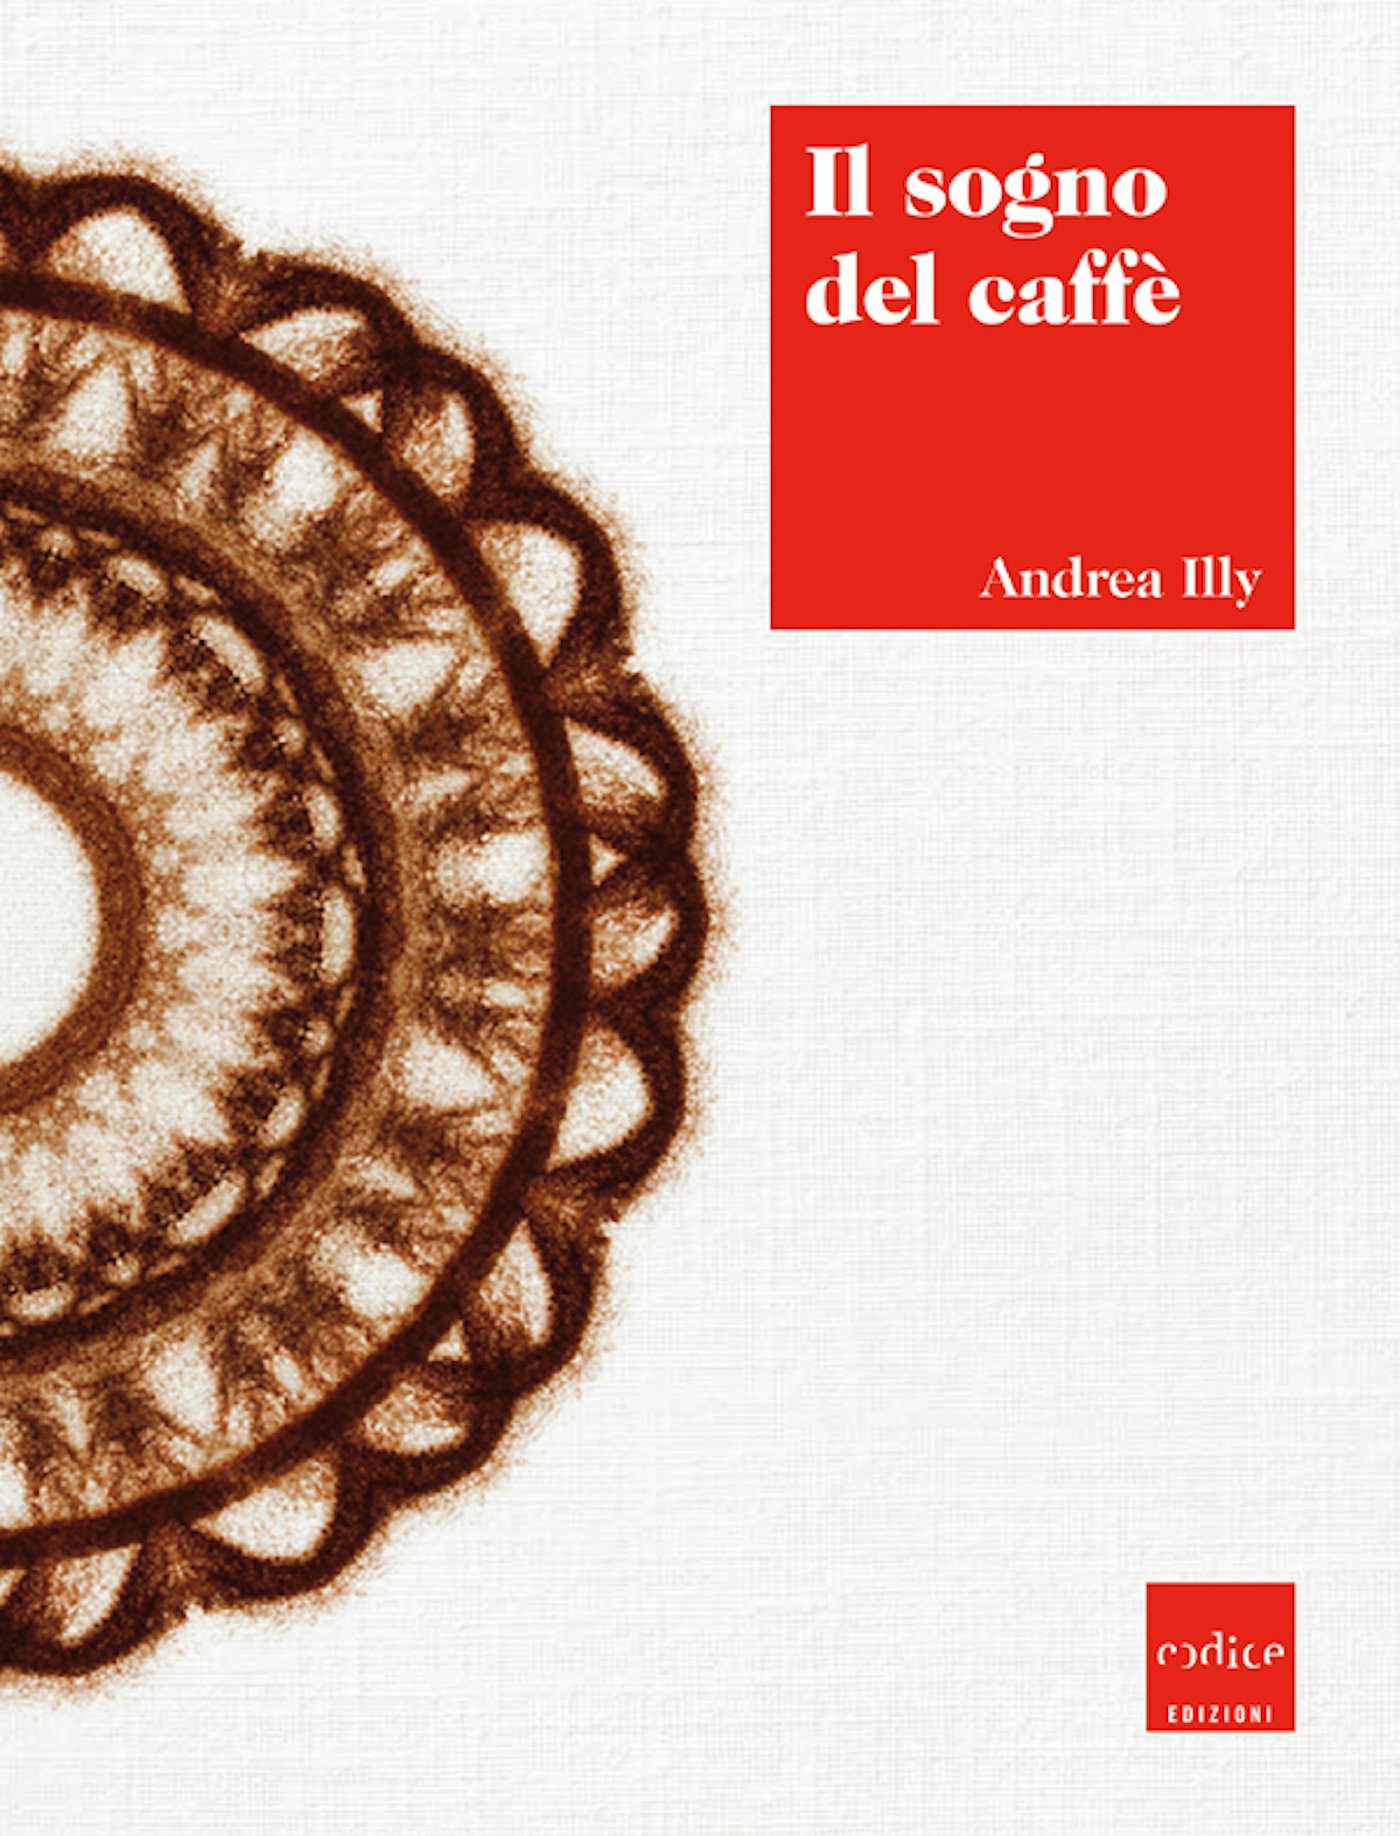 Il sogno del caffè (Italian Edition)